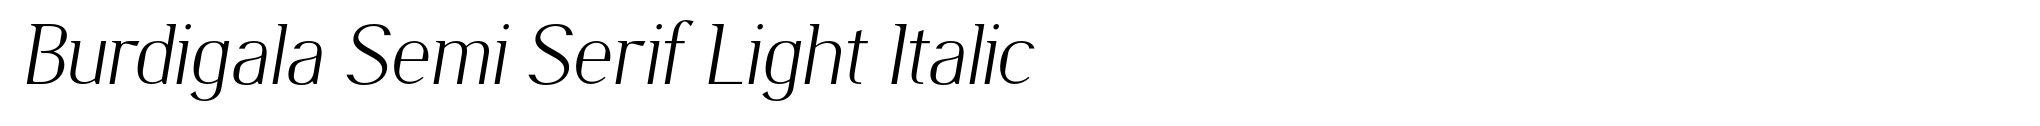 Burdigala Semi Serif Light Italic image